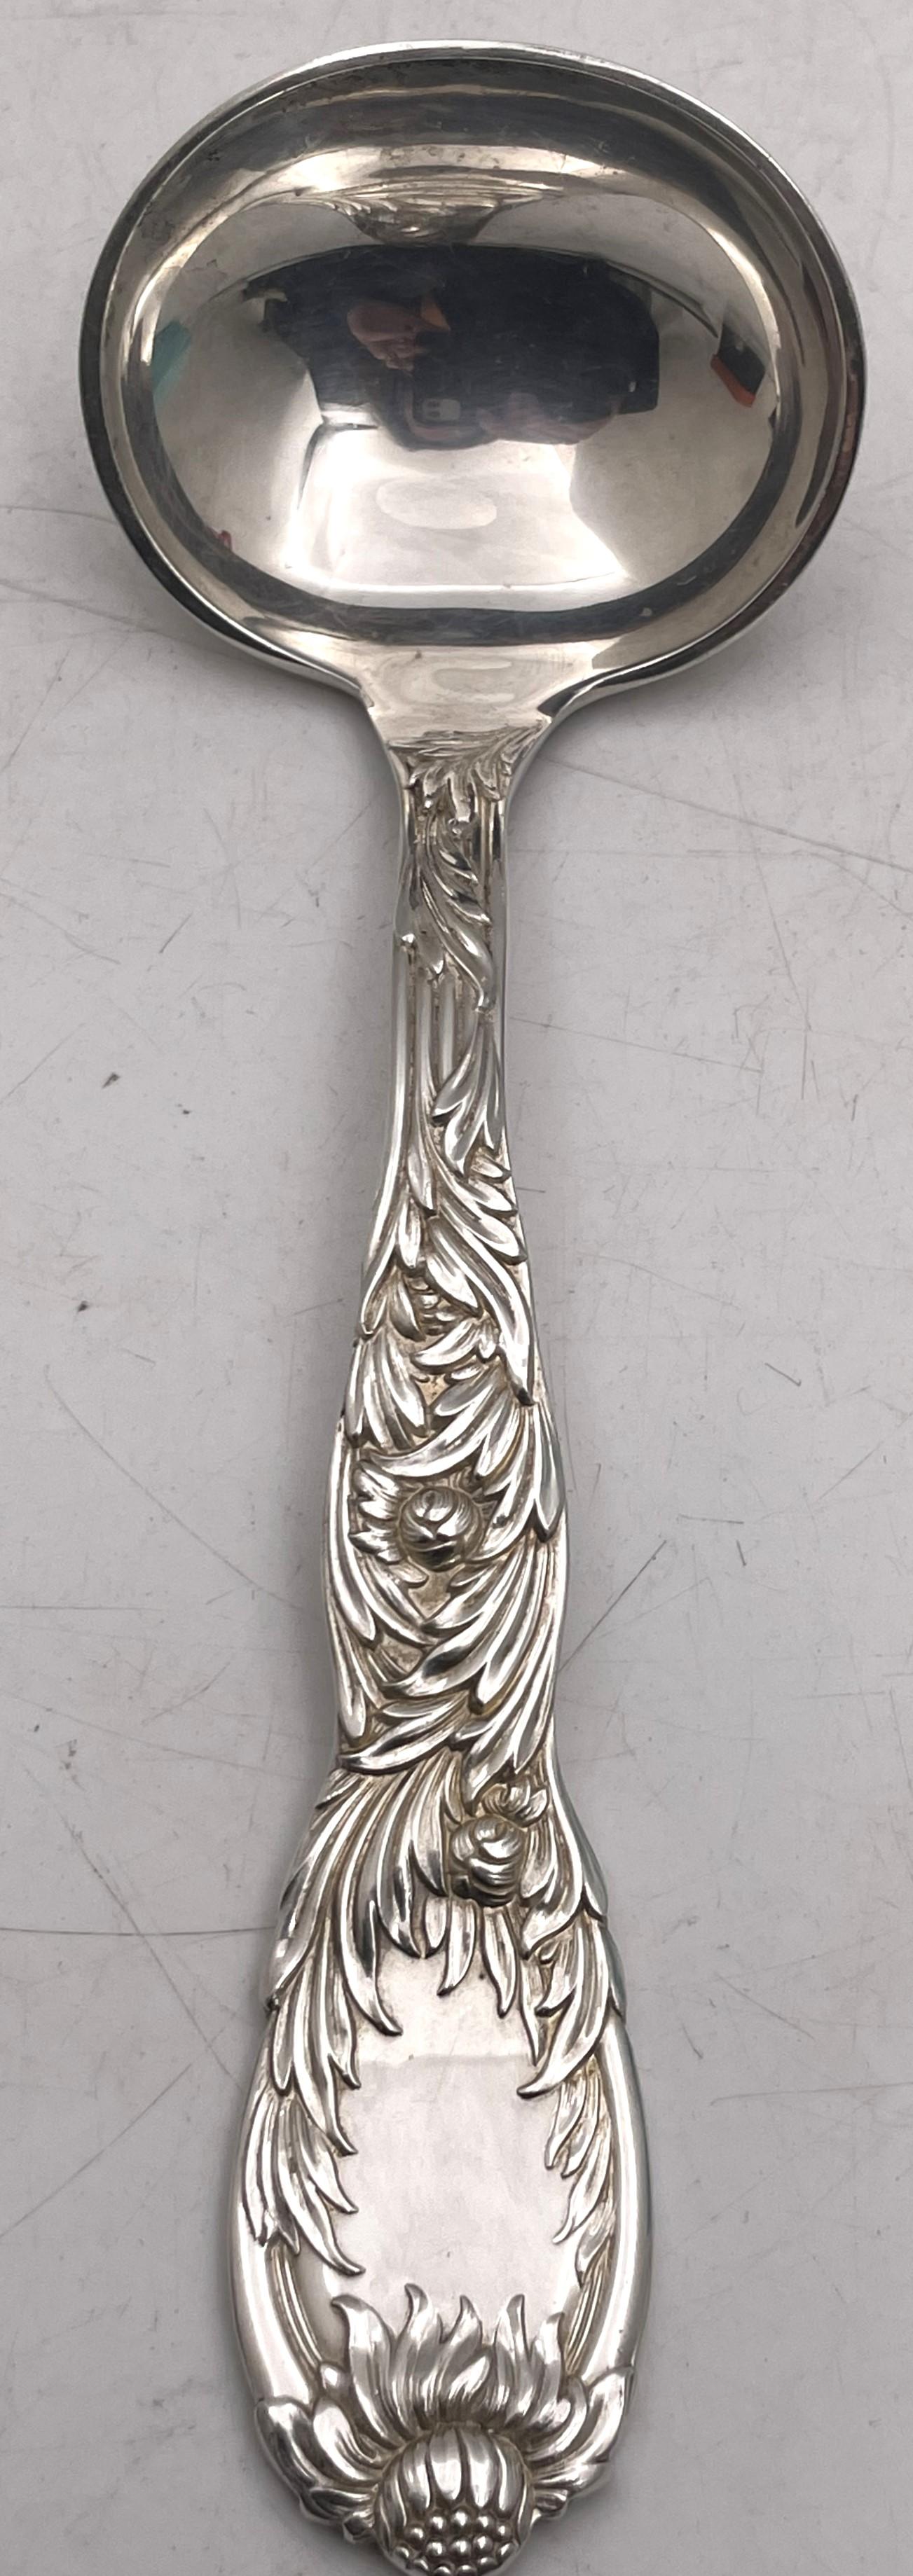 Tiffany & Co. Sterling Silber Soßenkelle in der berühmten Chrysantheme Muster, schön mit Chrysanthemen Blumen auf beiden Seiten geschmückt, Messung 7 